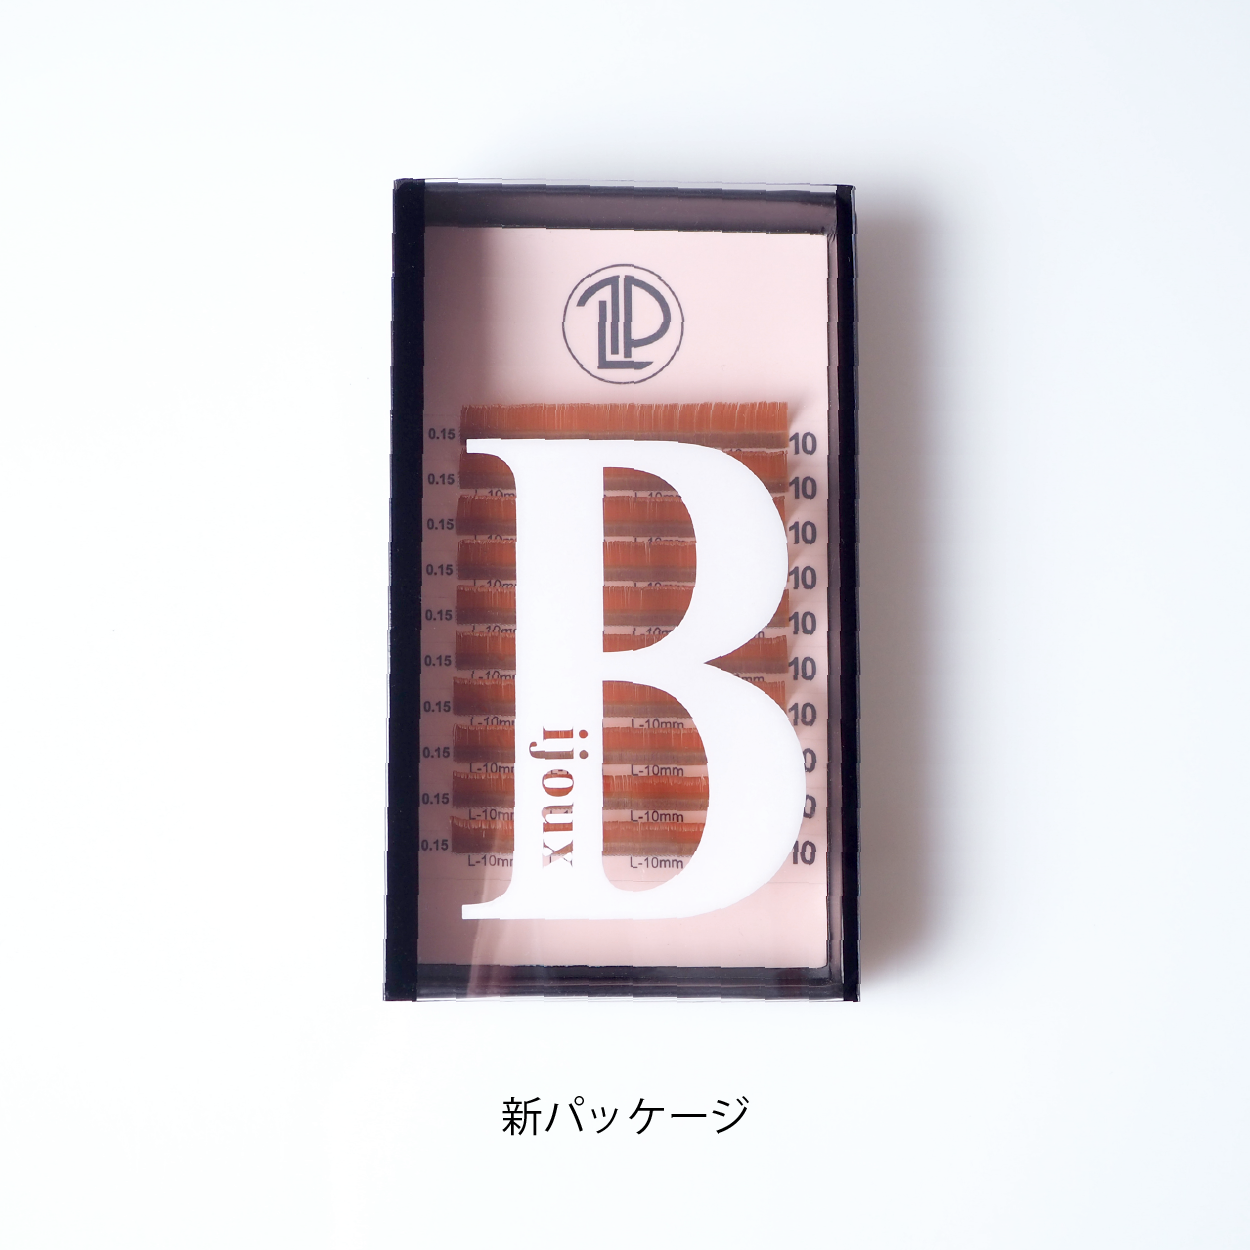 【MIX】Bijoux シトリン/ 0.15mm